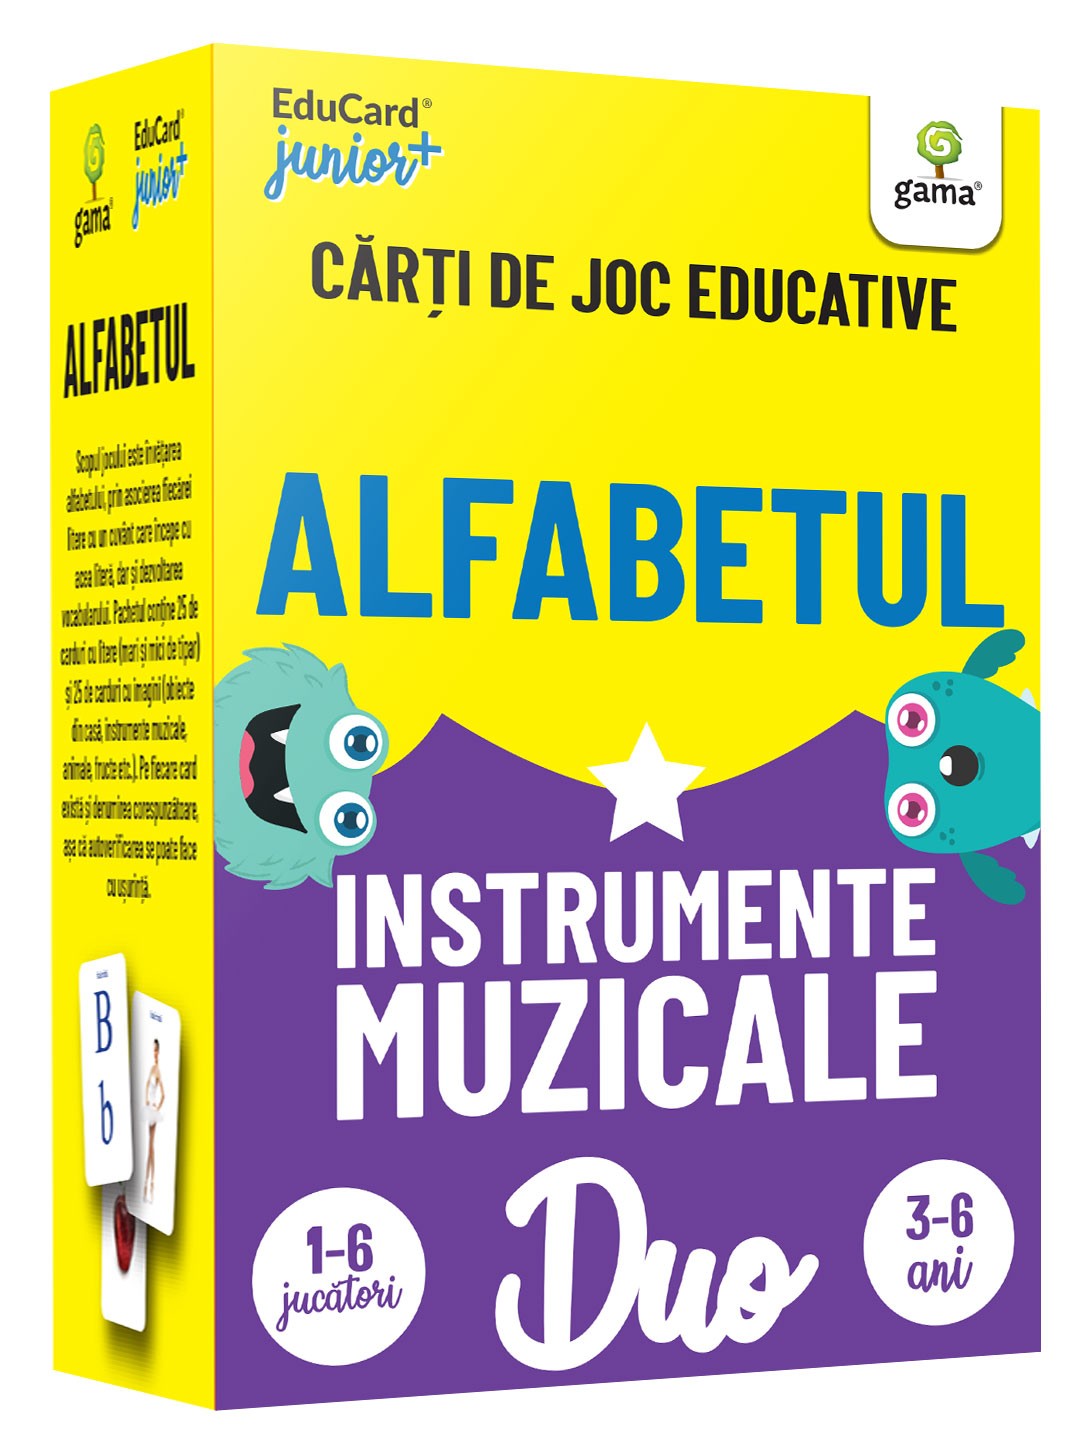 DuoCard - Alfabetul • Instrumente muzicale